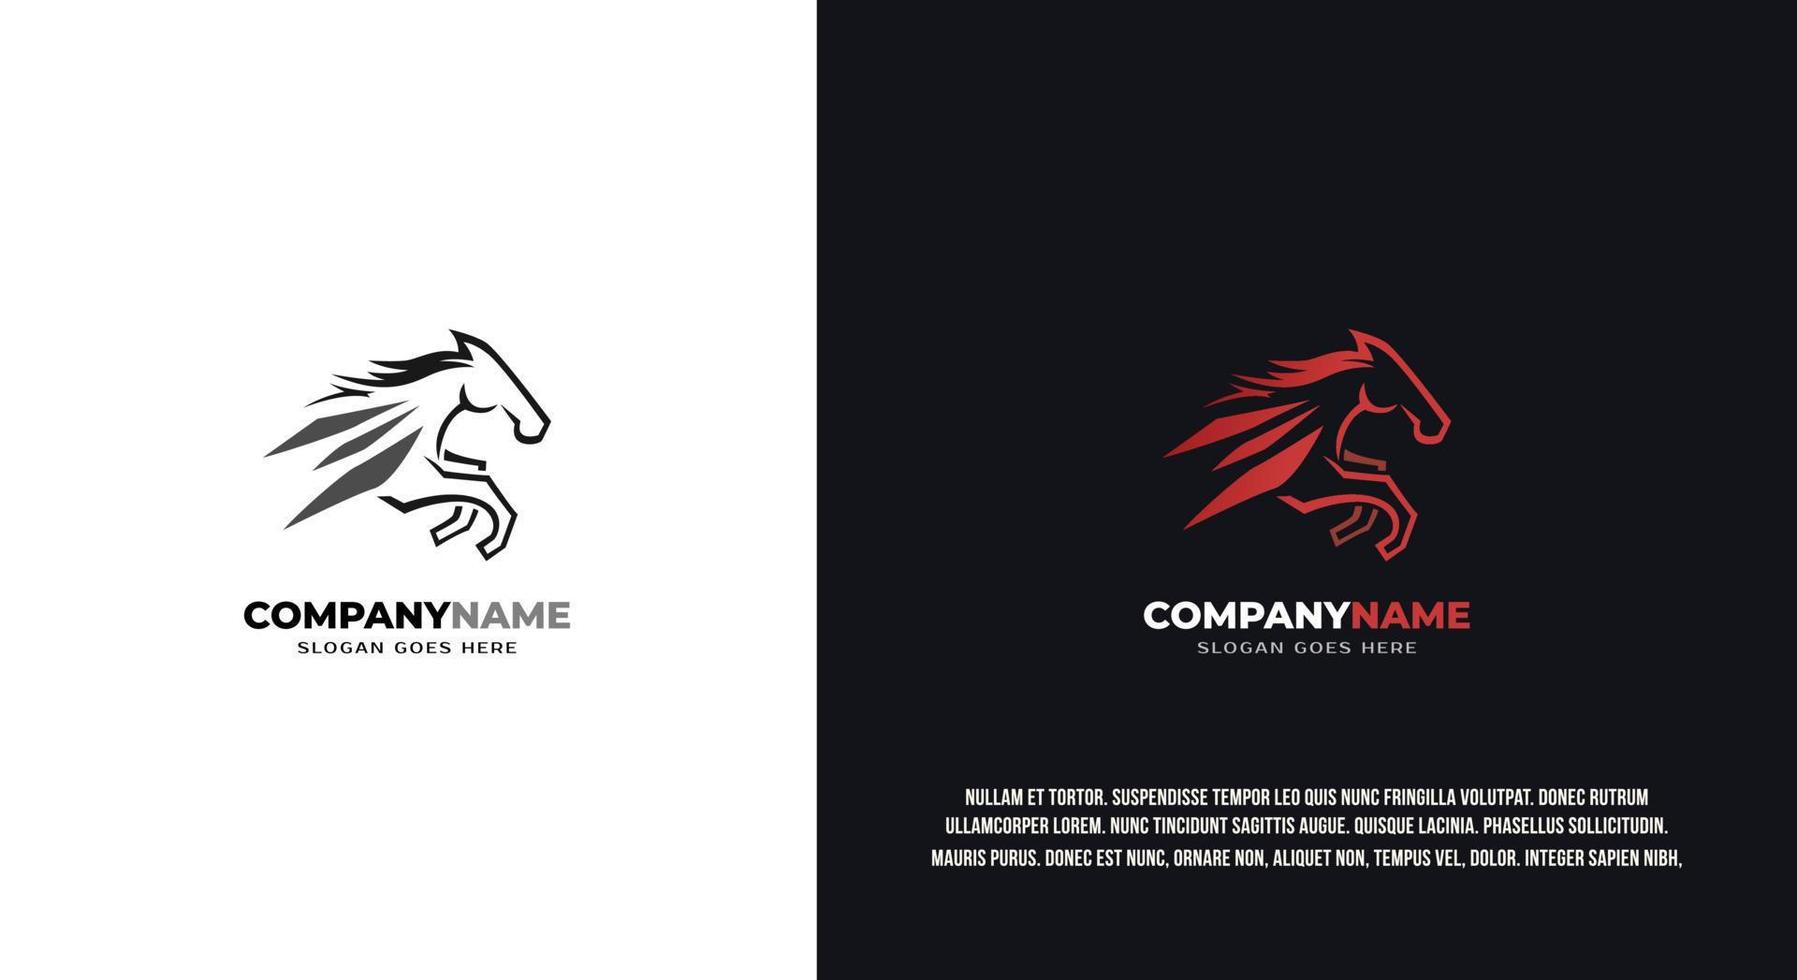 création de logo abstrait de cheval de course, vecteur premium.